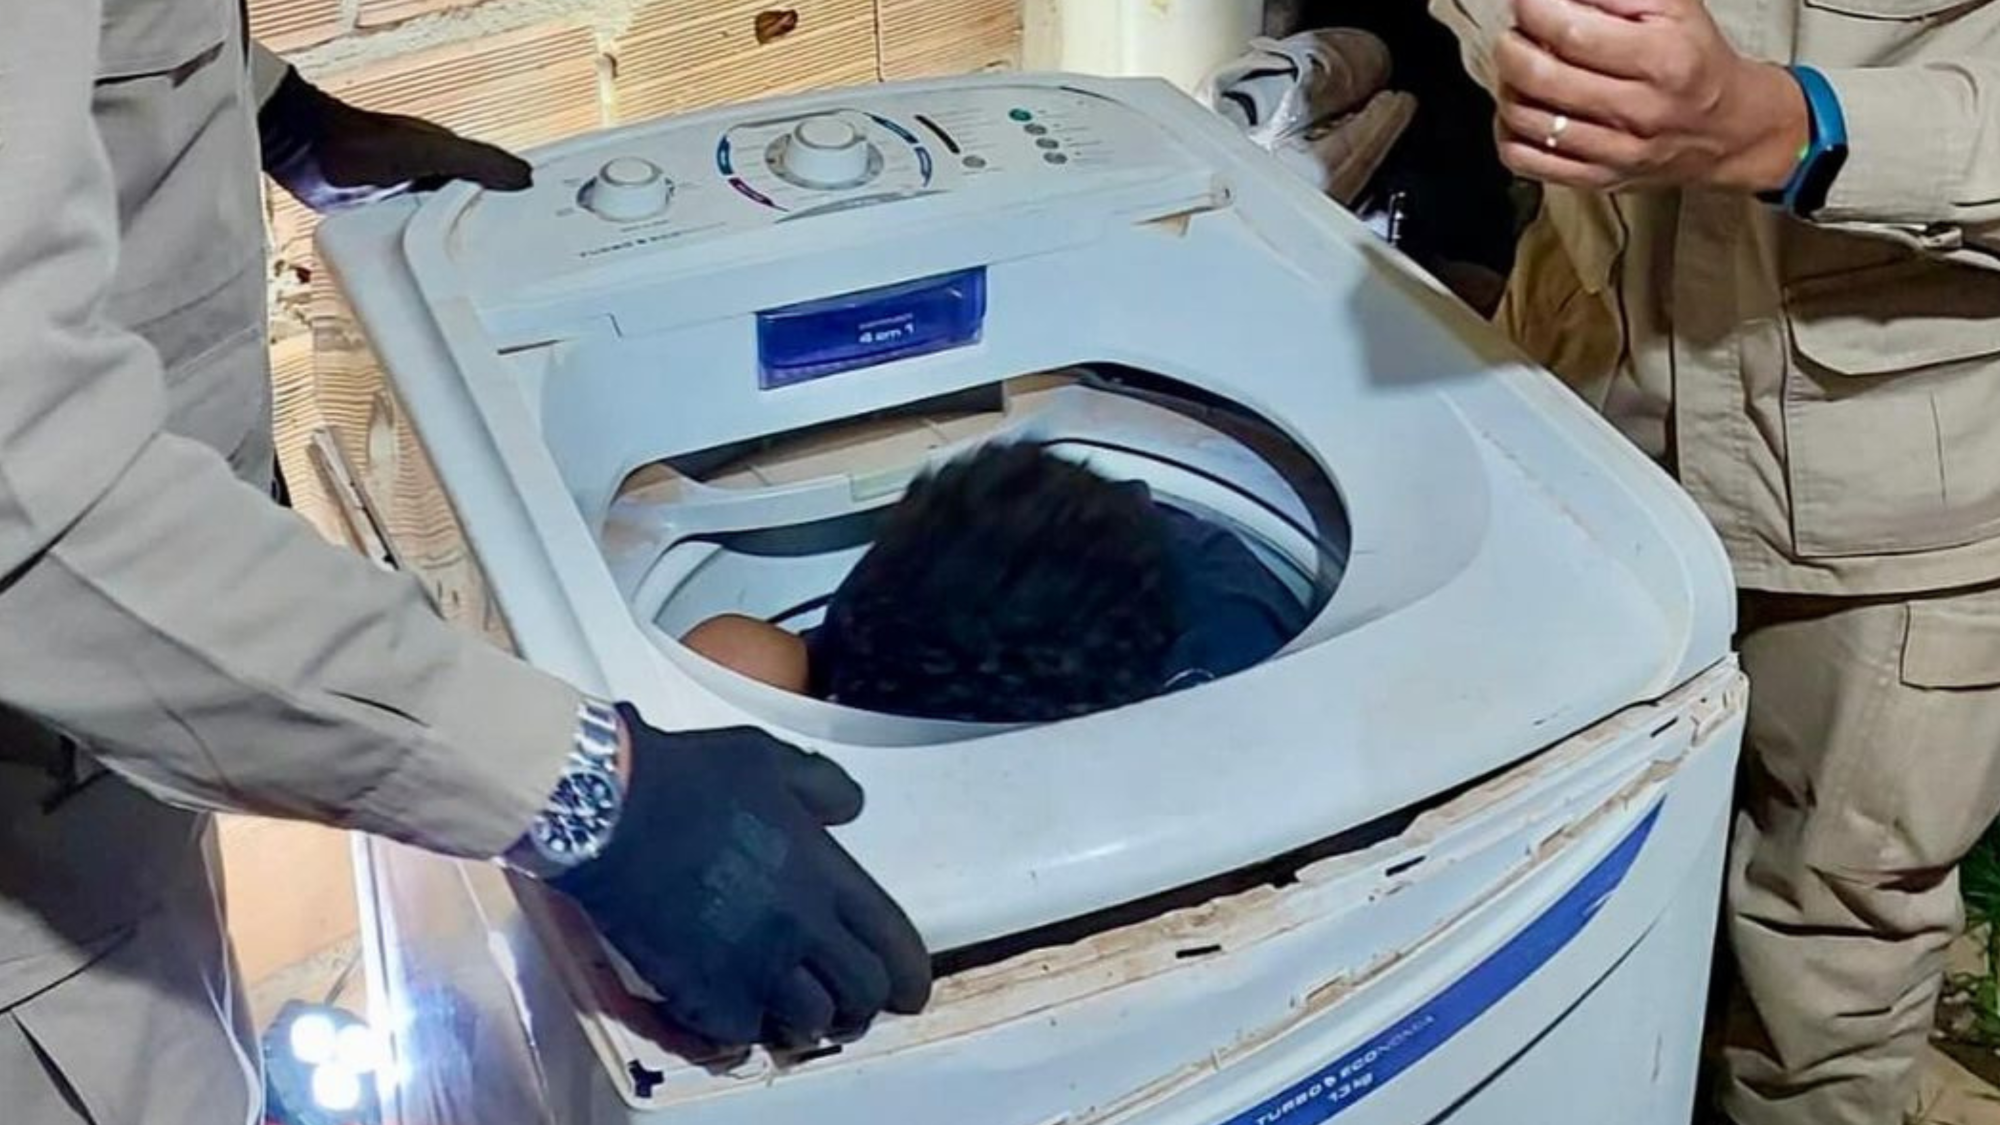 Criança fica presa dentro de máquina de lavar em Cristalina